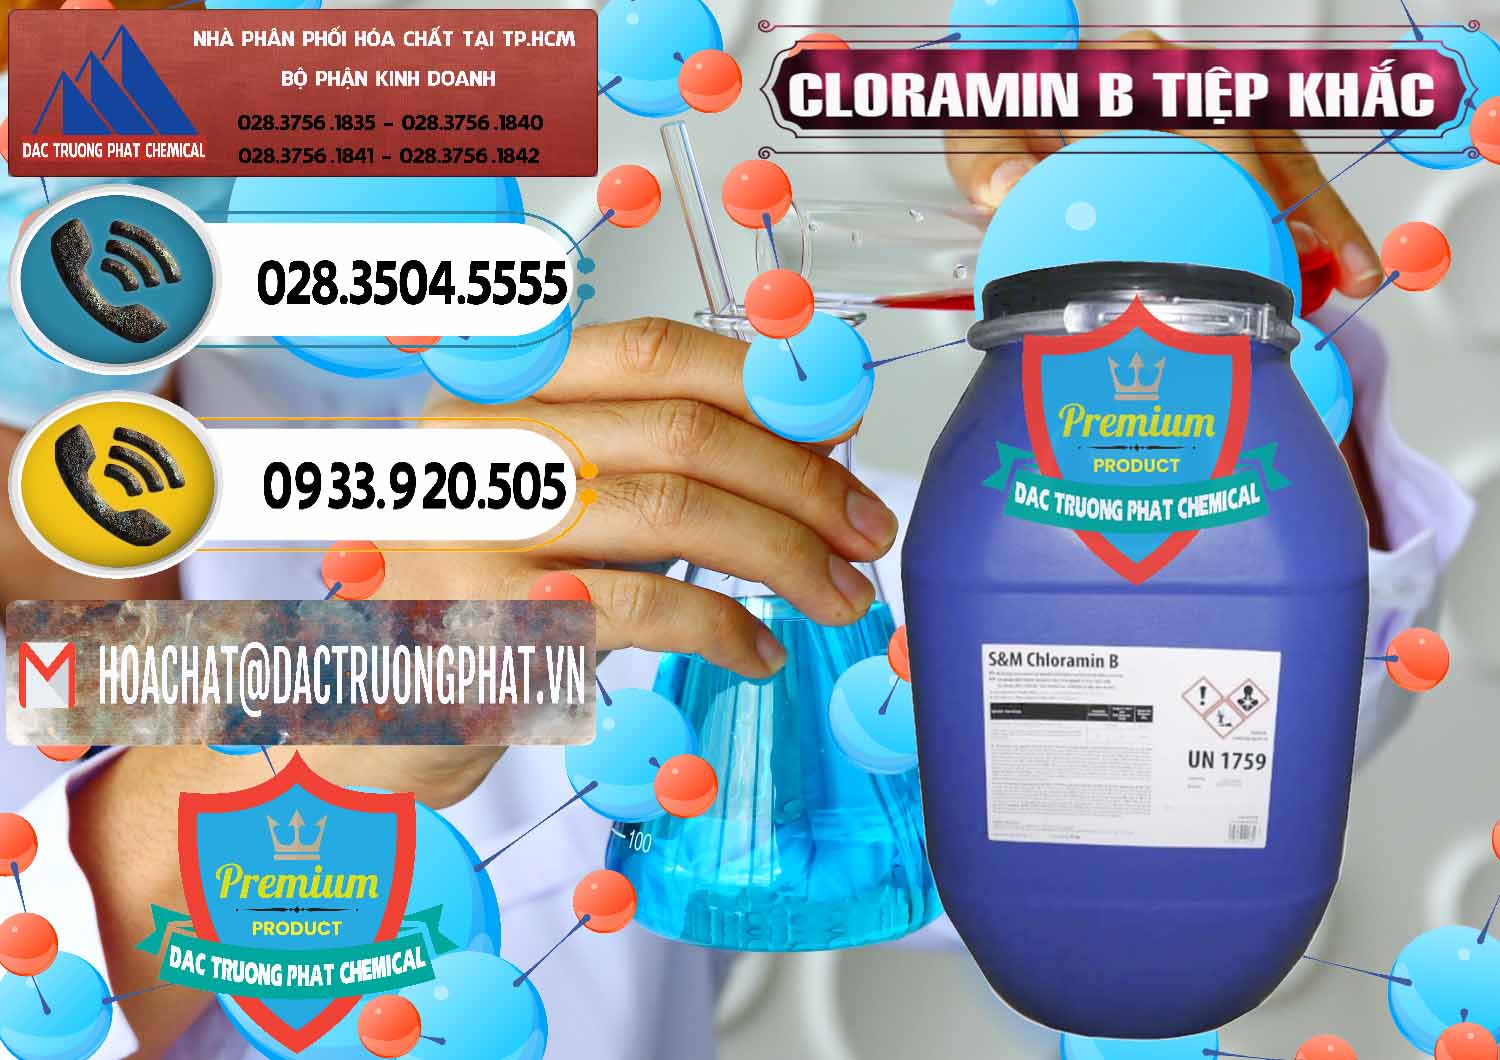 Chuyên bán _ cung ứng Cloramin B Cộng Hòa Séc Tiệp Khắc Czech Republic - 0299 - Đơn vị chuyên kinh doanh và phân phối hóa chất tại TP.HCM - hoachatdetnhuom.vn